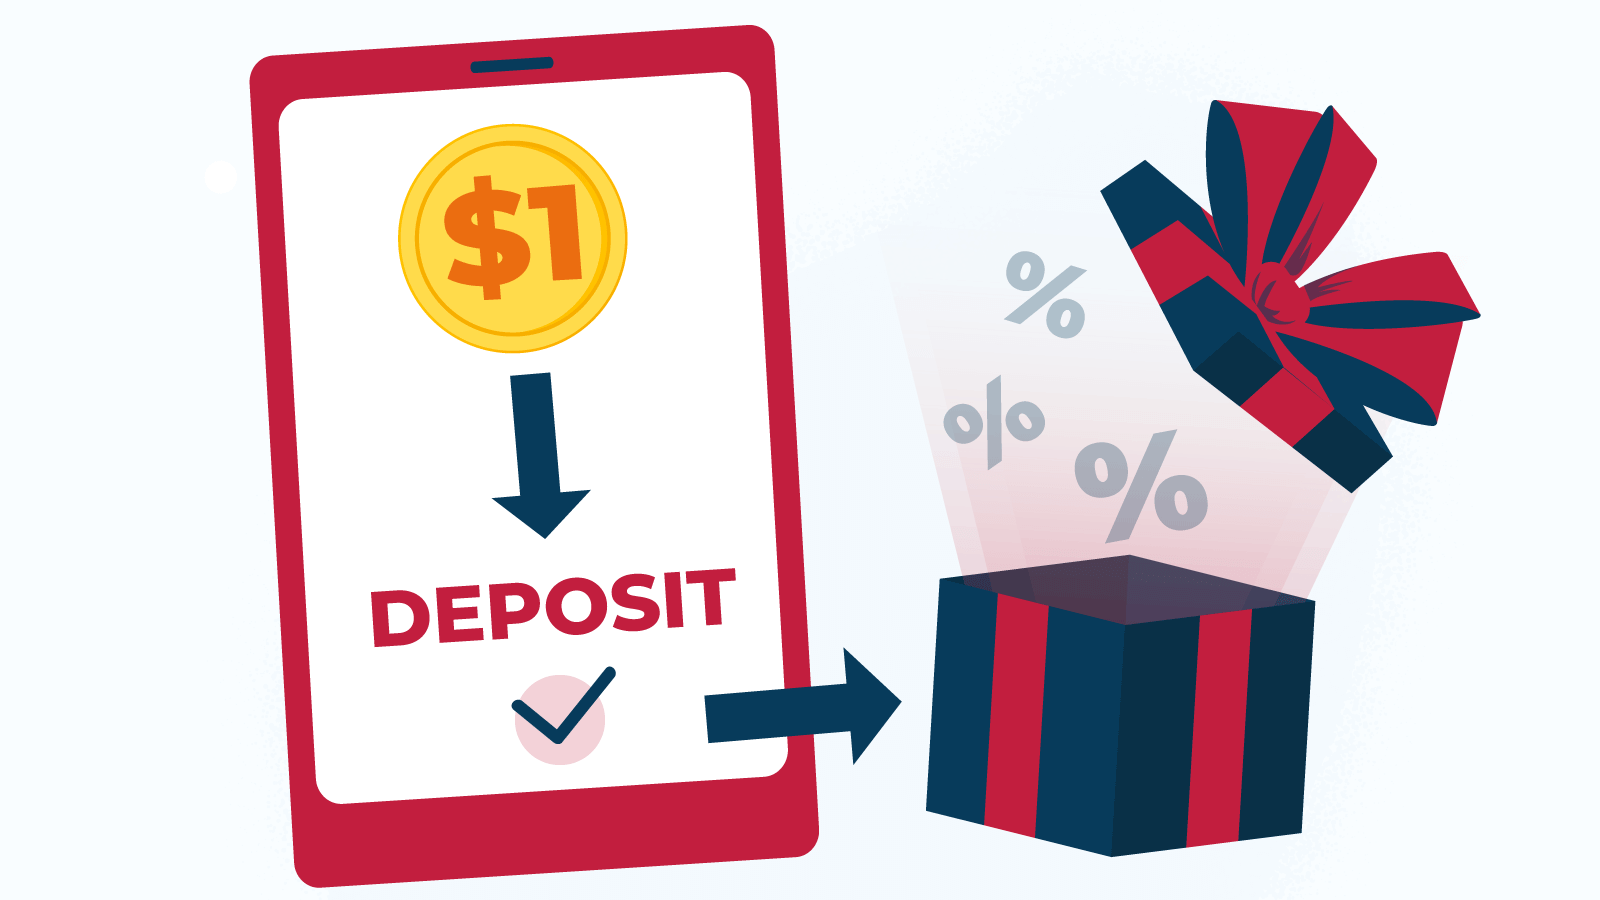 Why do casinos require a C$1 minimum deposit